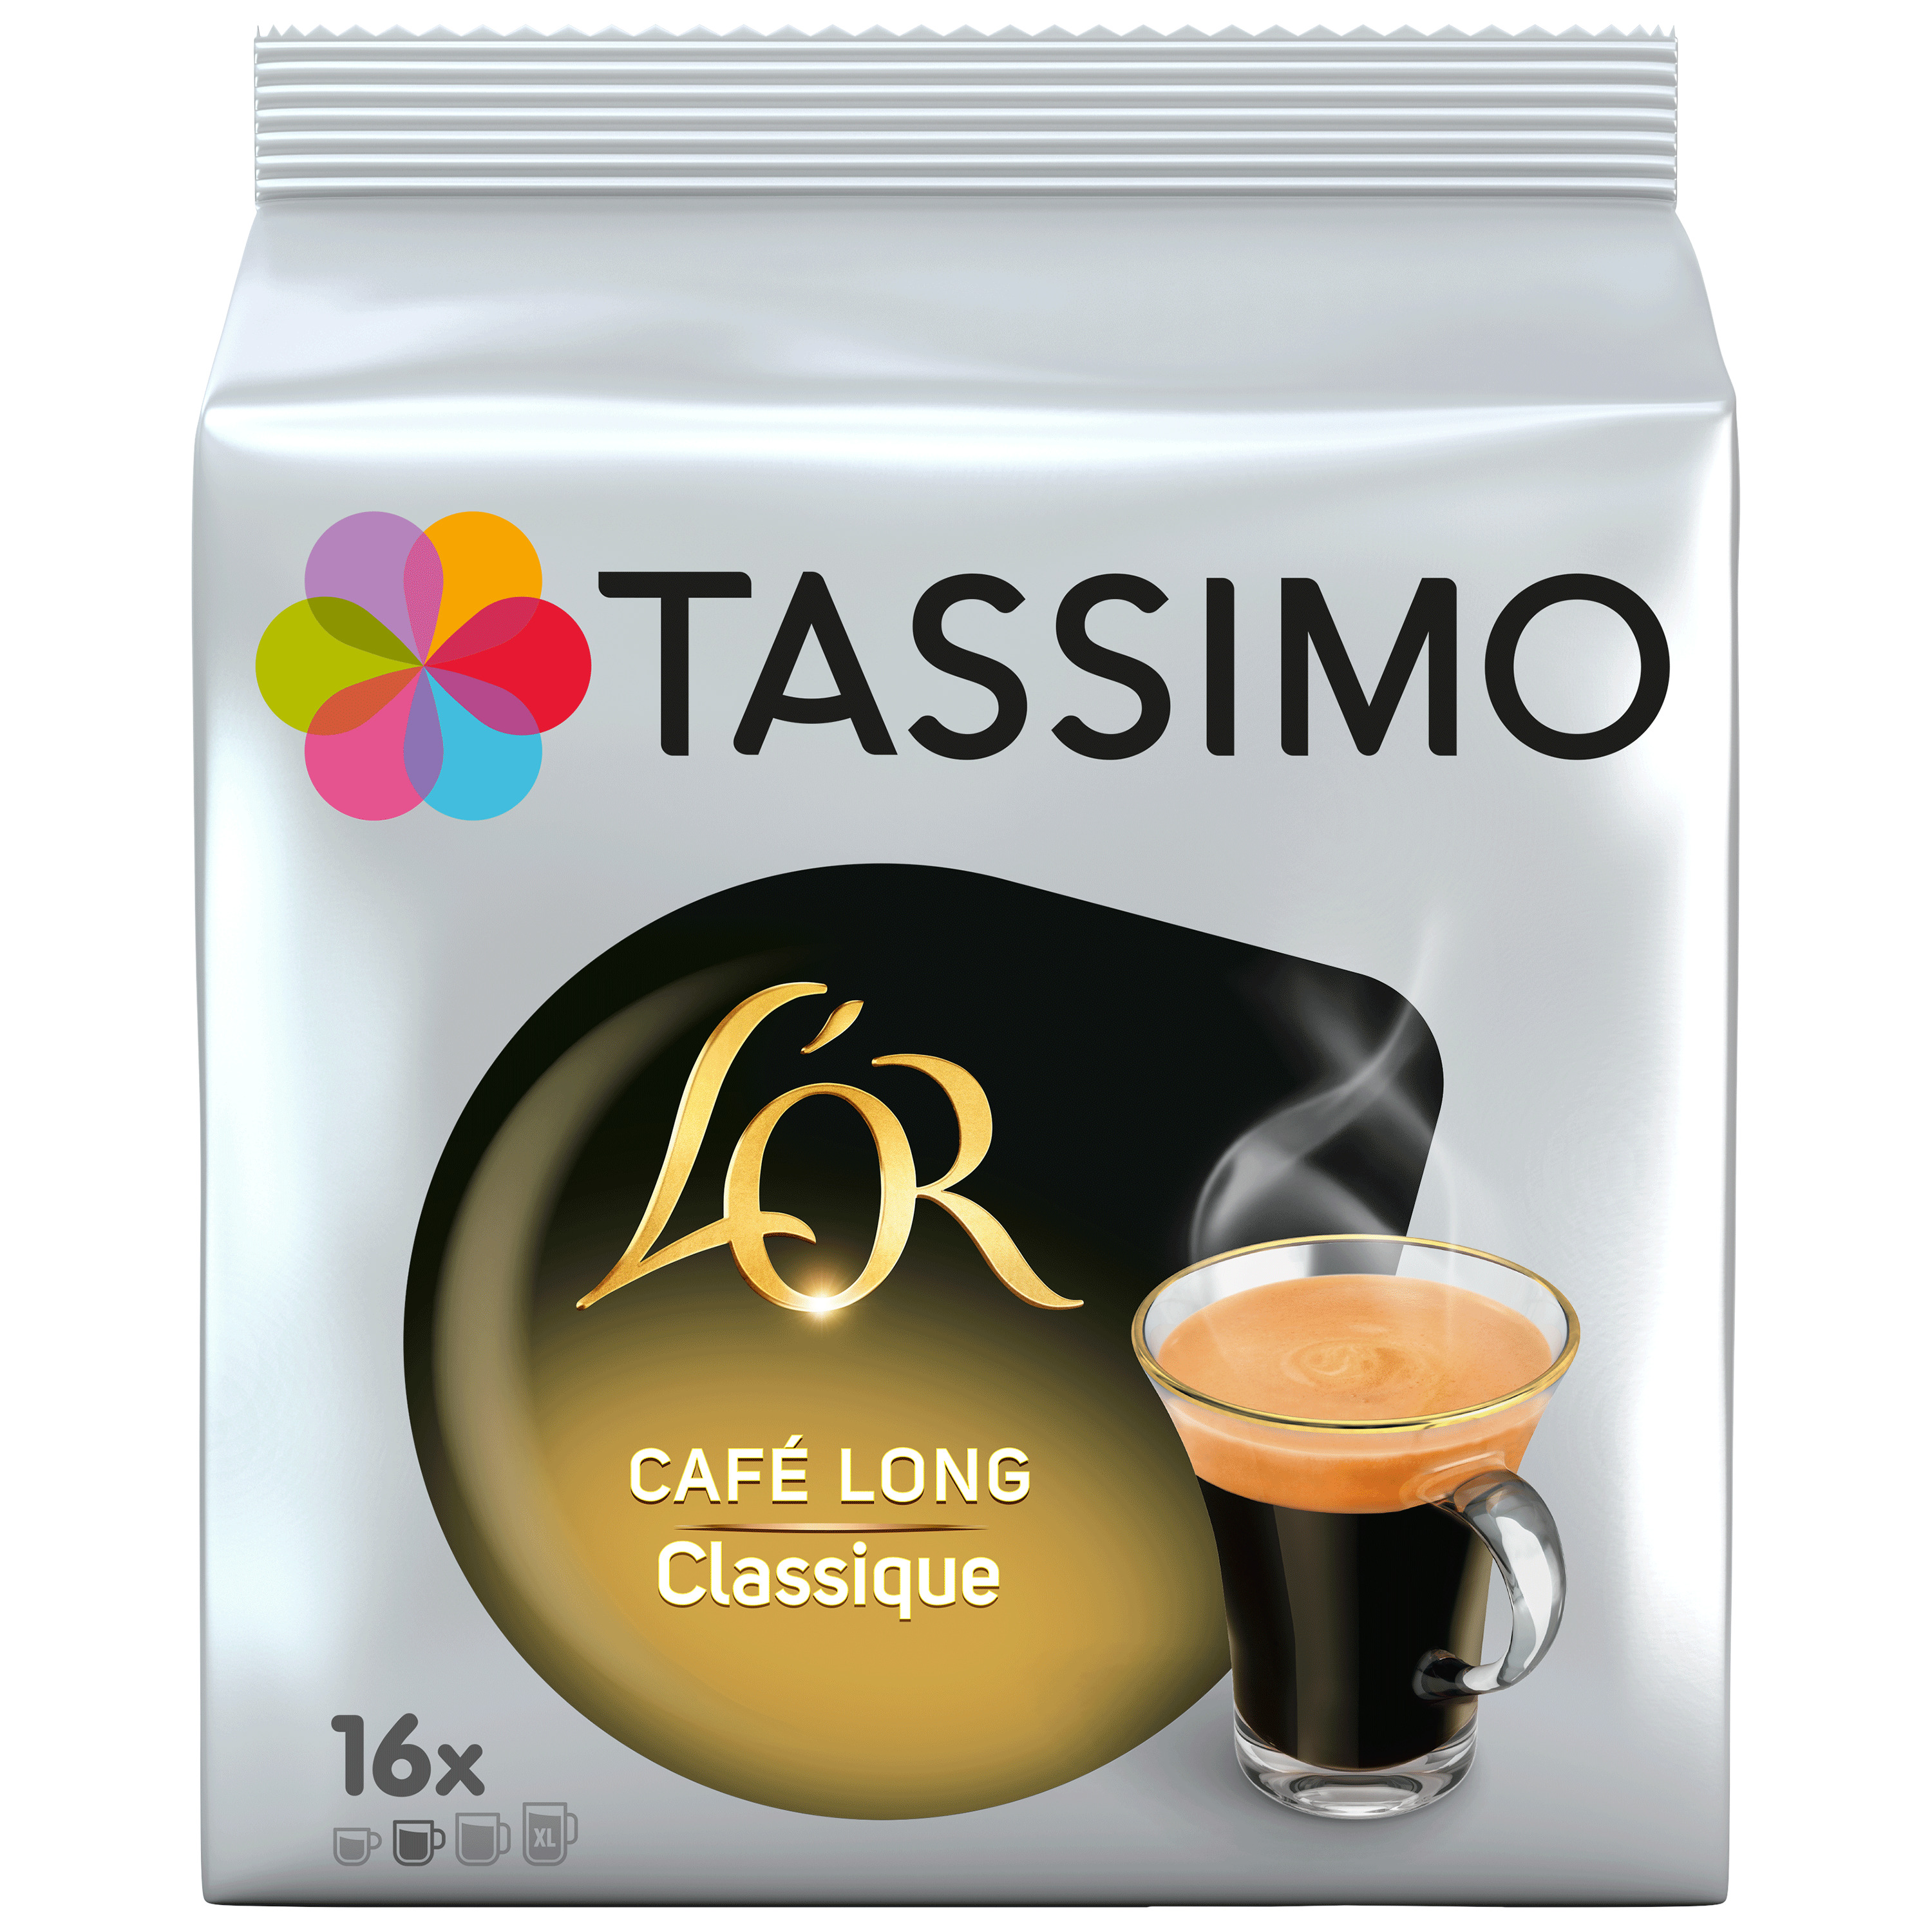 Promo Dosettes de café tassimo chez Auchan Supermarché